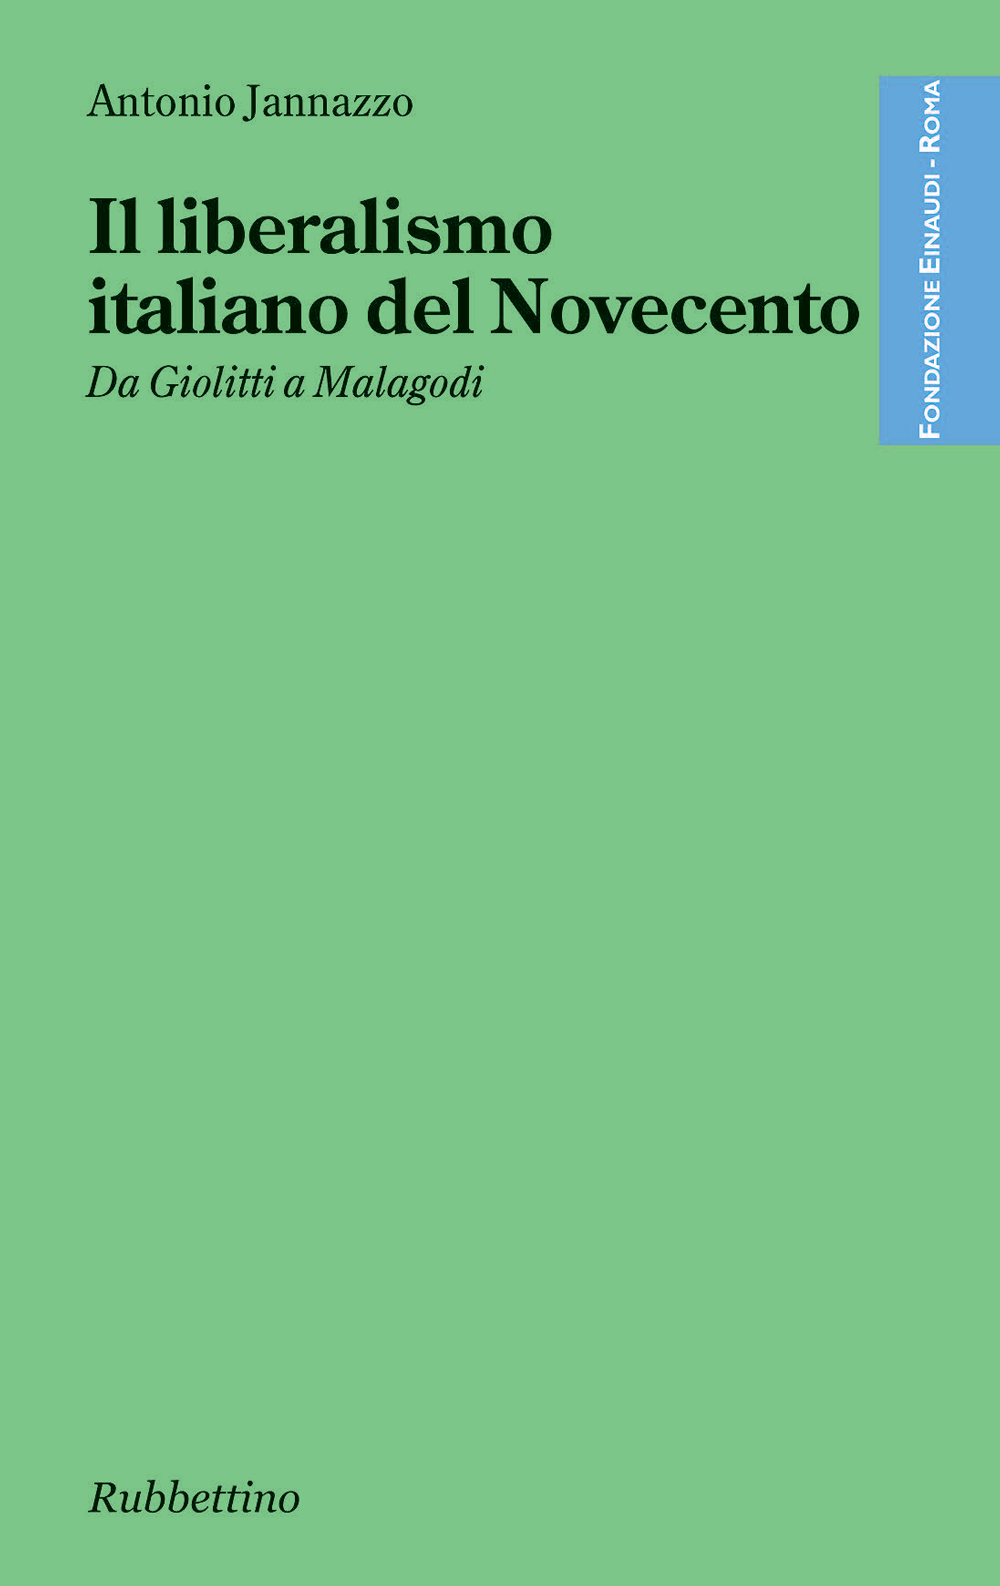 Il liberalismo italiano del Novecento di Antonio Jannazzo